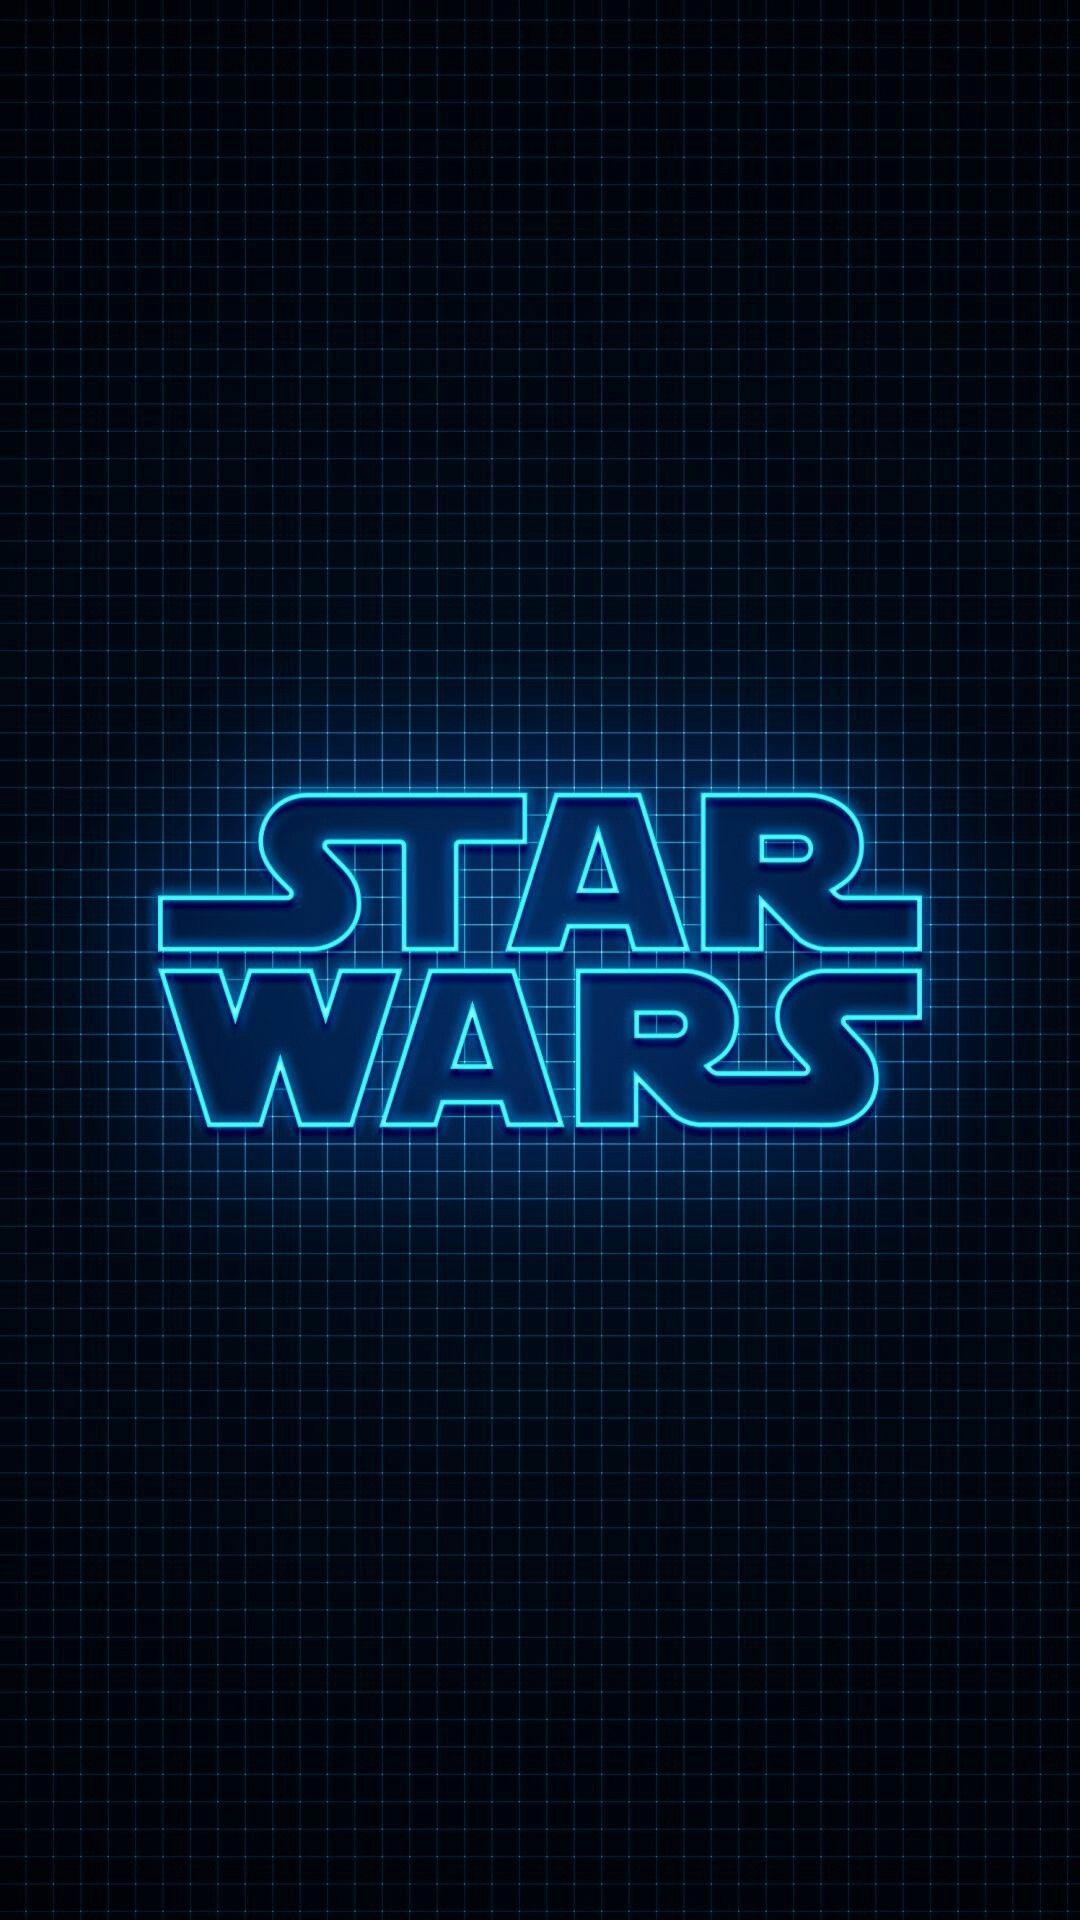 Star Wars logo in neon blue light